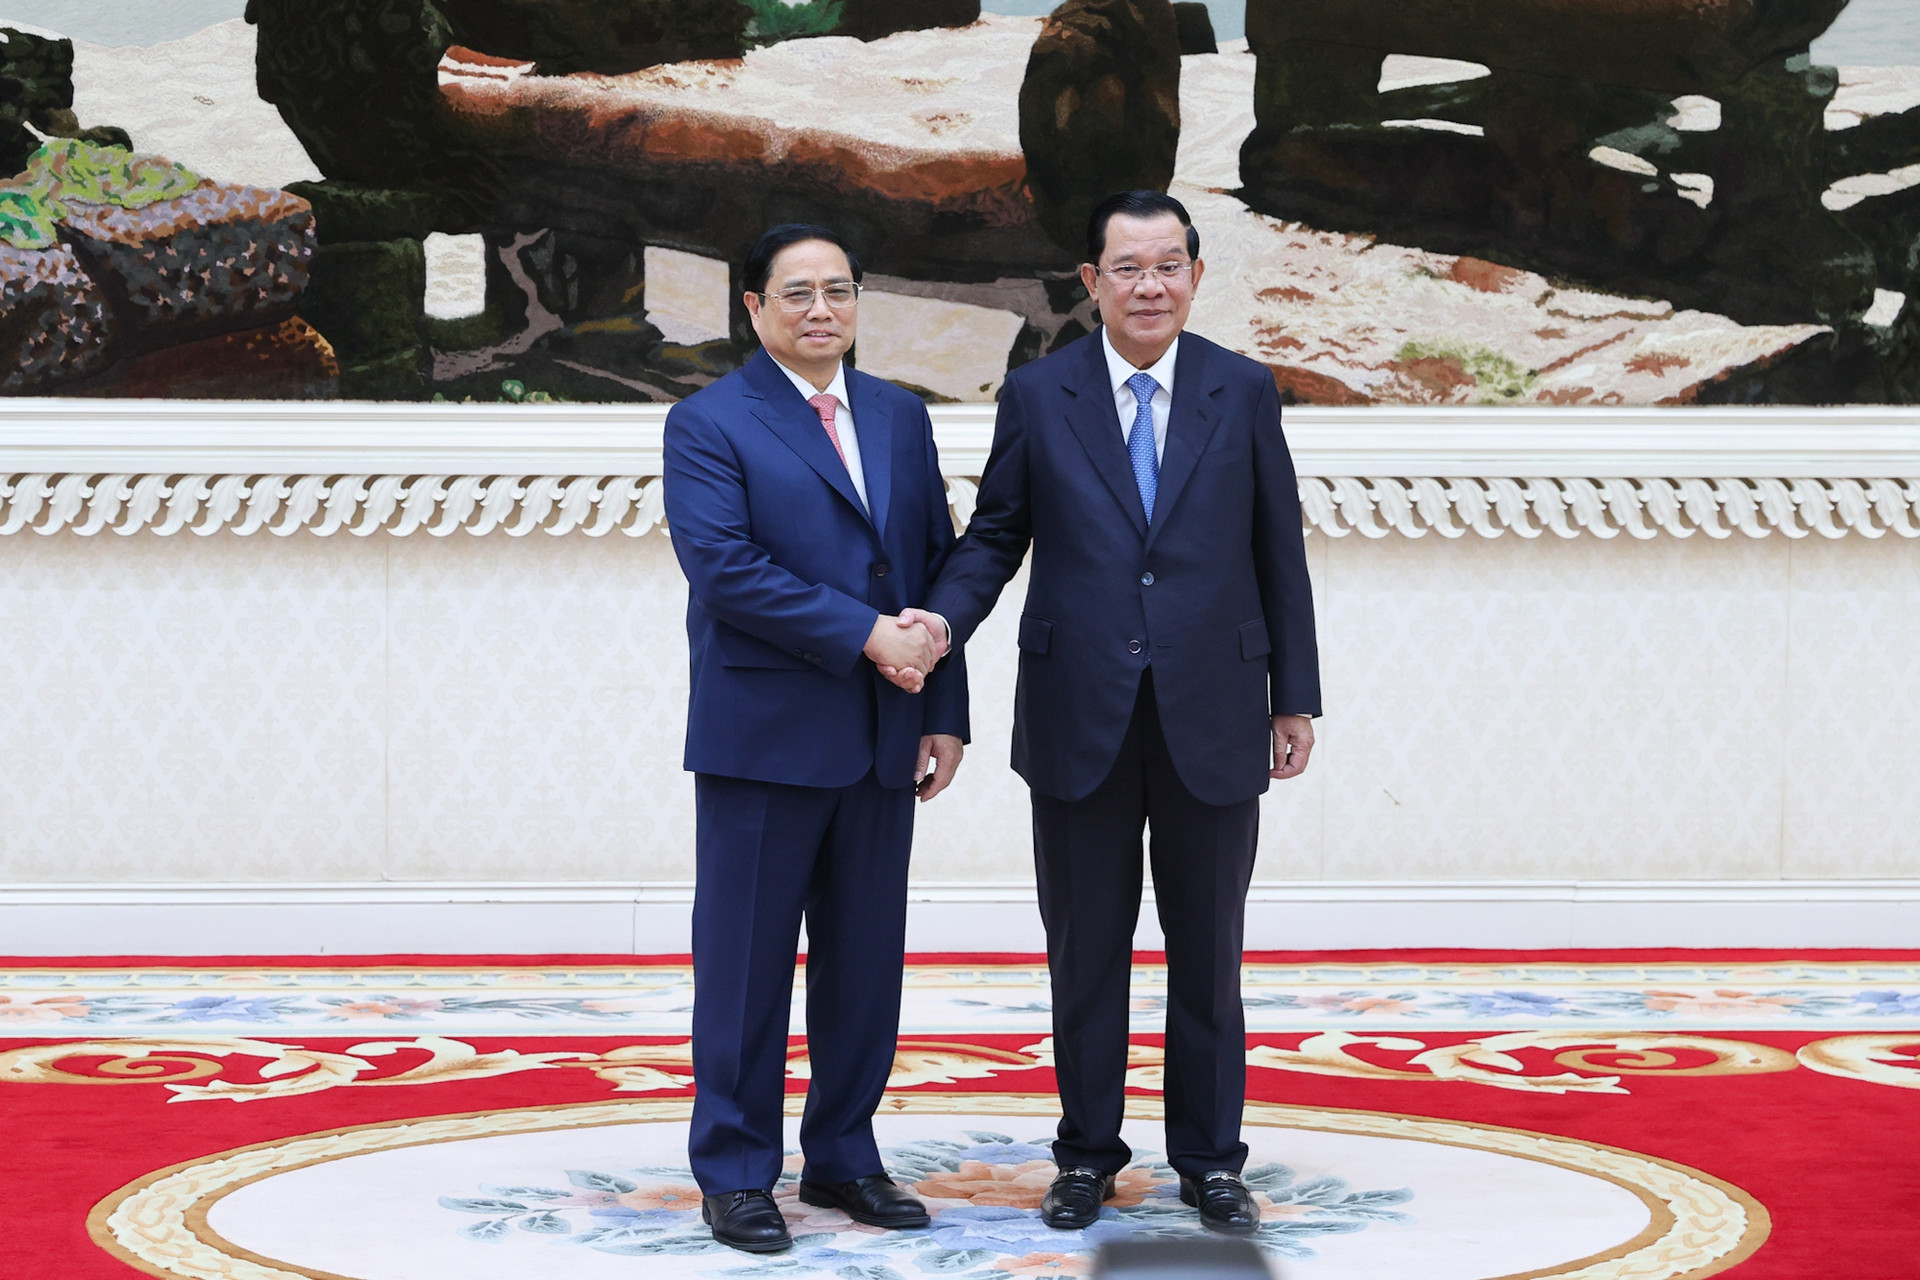 Chùm ảnh: Lễ đón chính thức Thủ tướng Phạm Minh Chính thăm Campuchia - Ảnh 1.